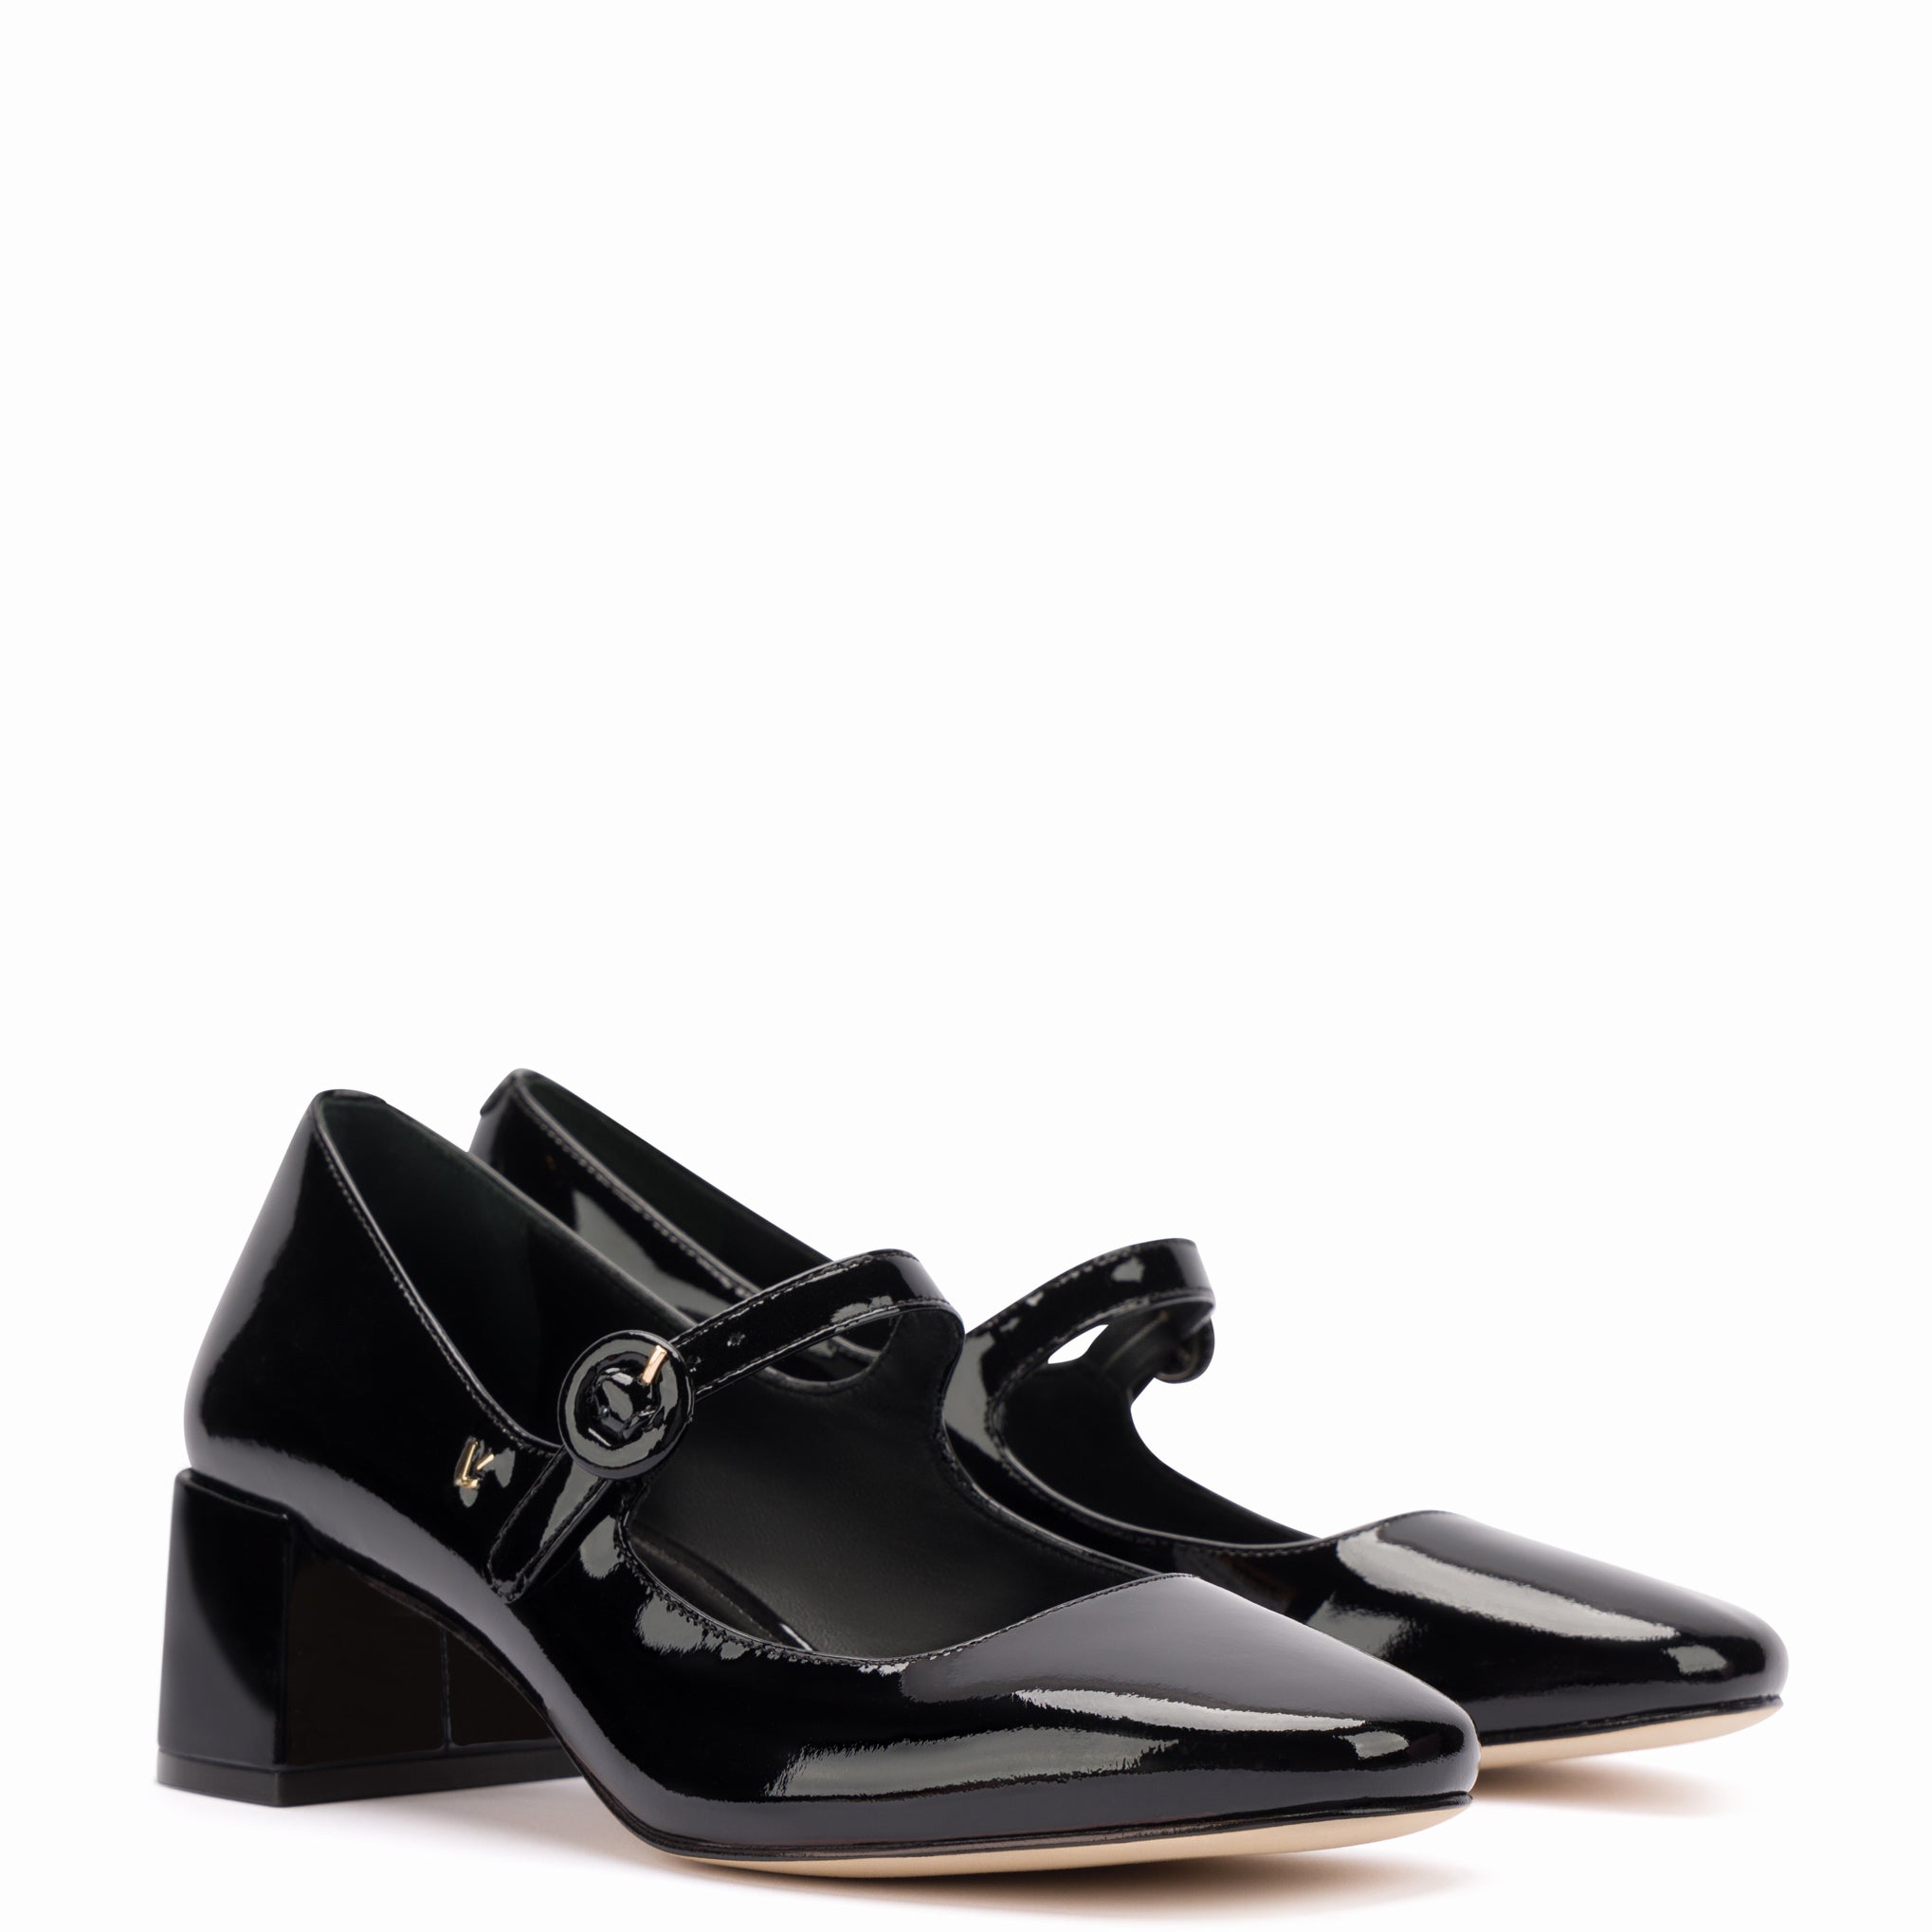 Edna Black Leather Mary Janes Natural Heel by Django & Juliette | Shop  Online at Mountfords